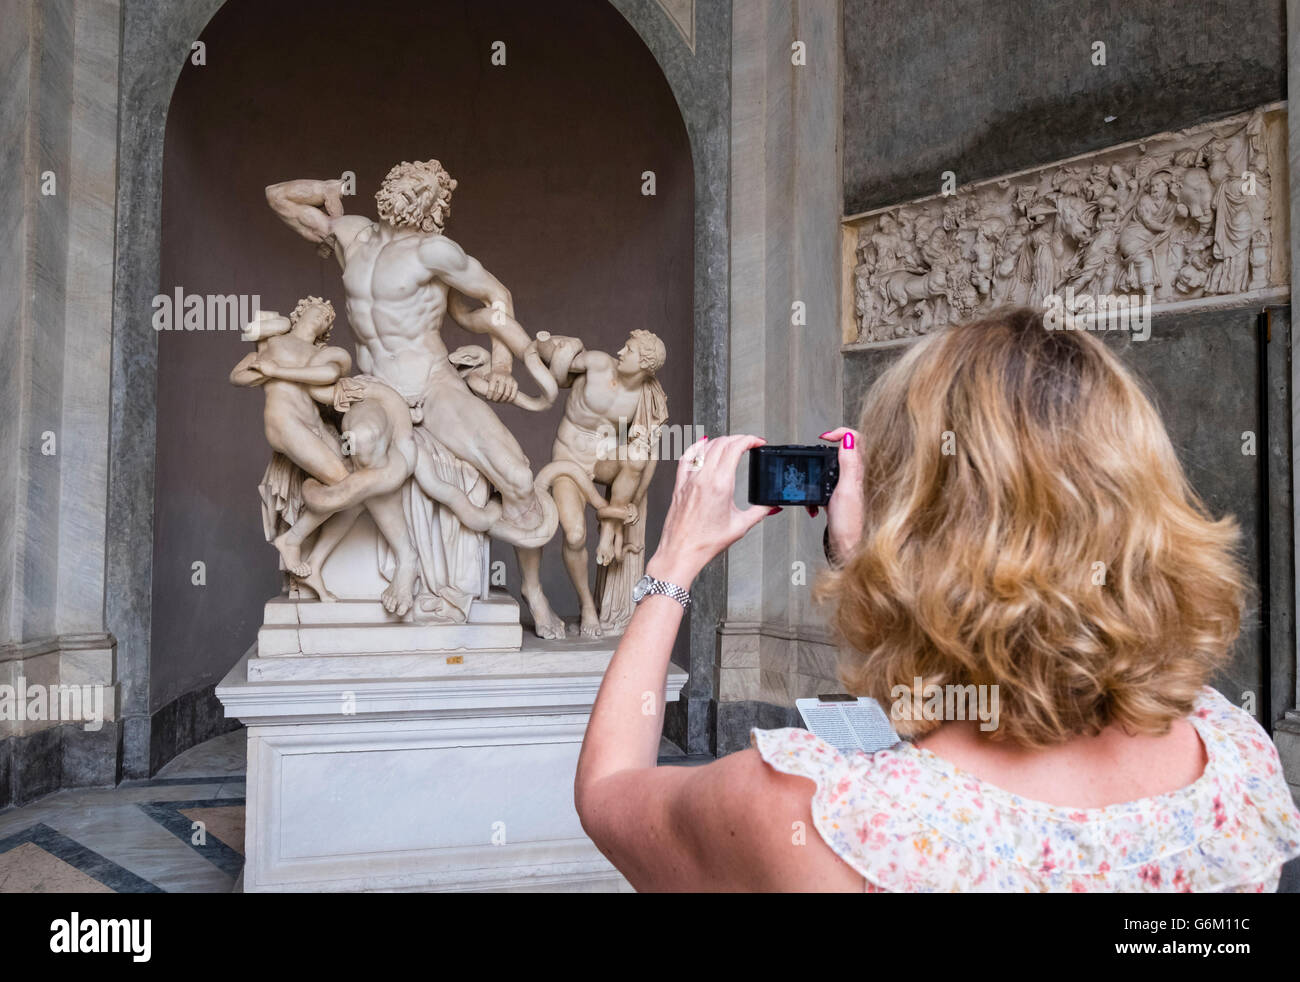 Les touristes à la recherche au groupe Laocošn sculpture au Musée du Vatican à Rome, Italie Banque D'Images